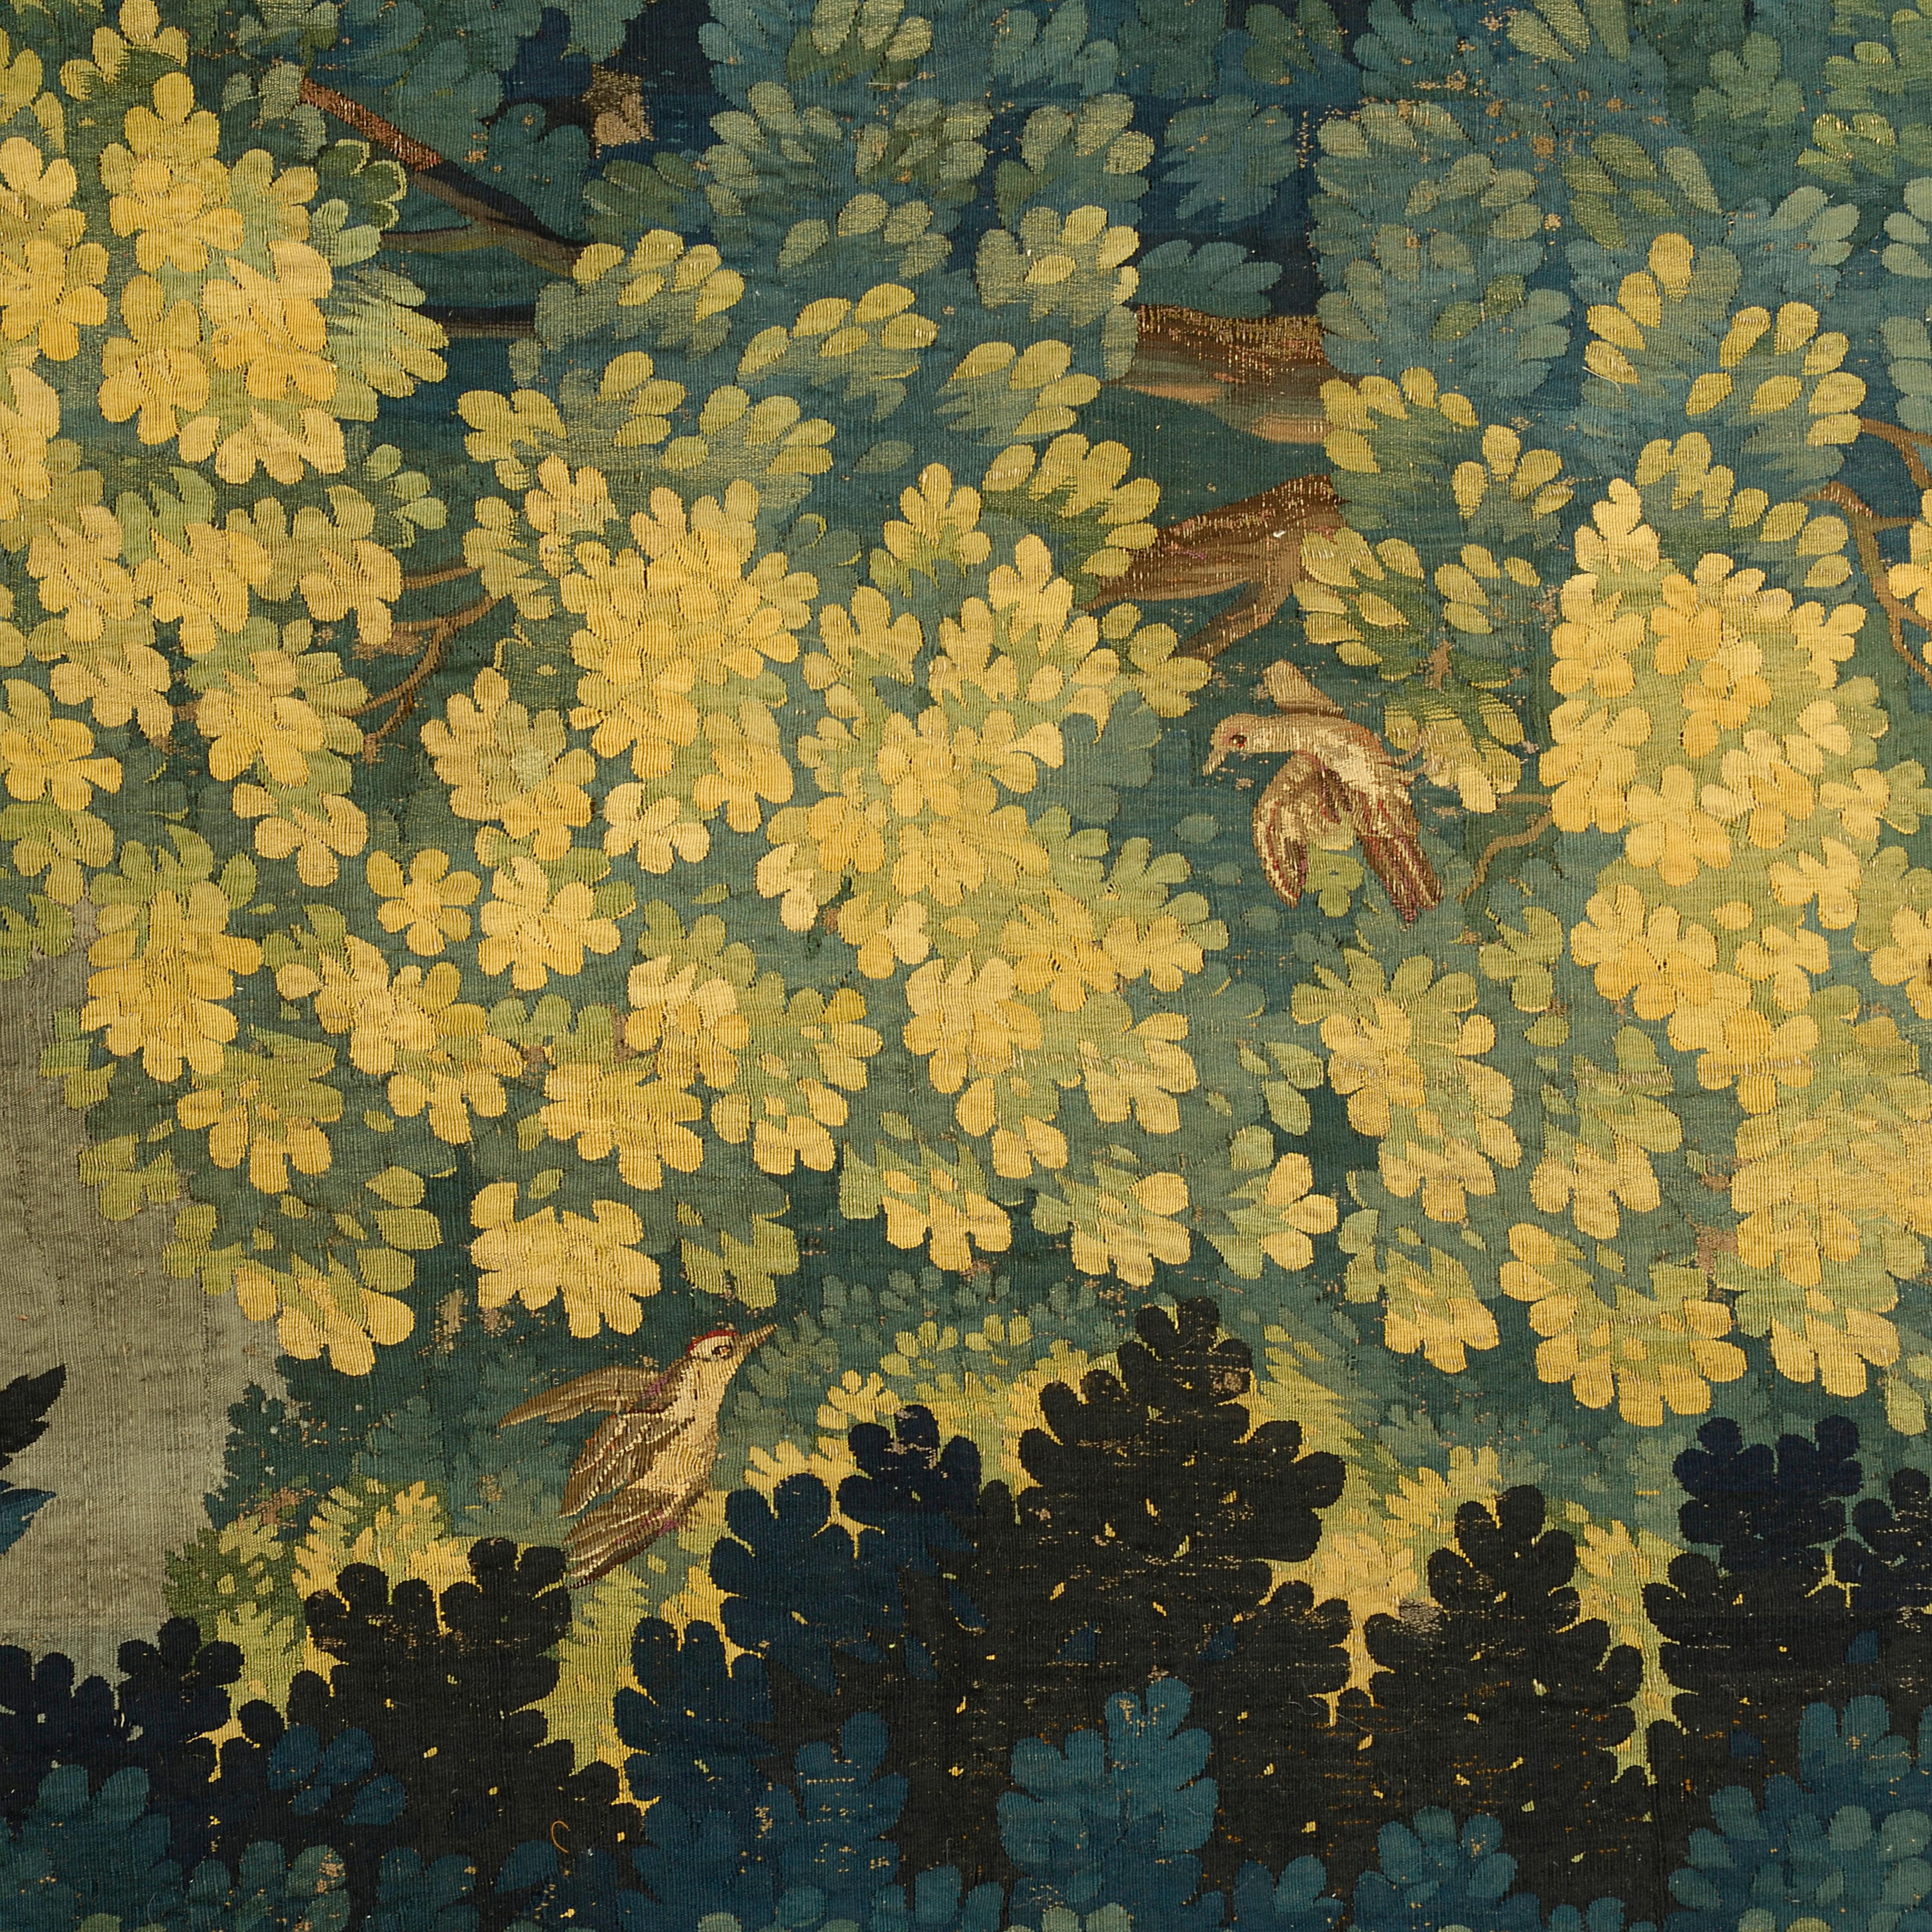 Tapisserie en soie et laine finement tissée, représentant un paysage boisé, avec un oiseau posé sur un tronc d'arbre et des plumes d'autruche dans chaque coin.